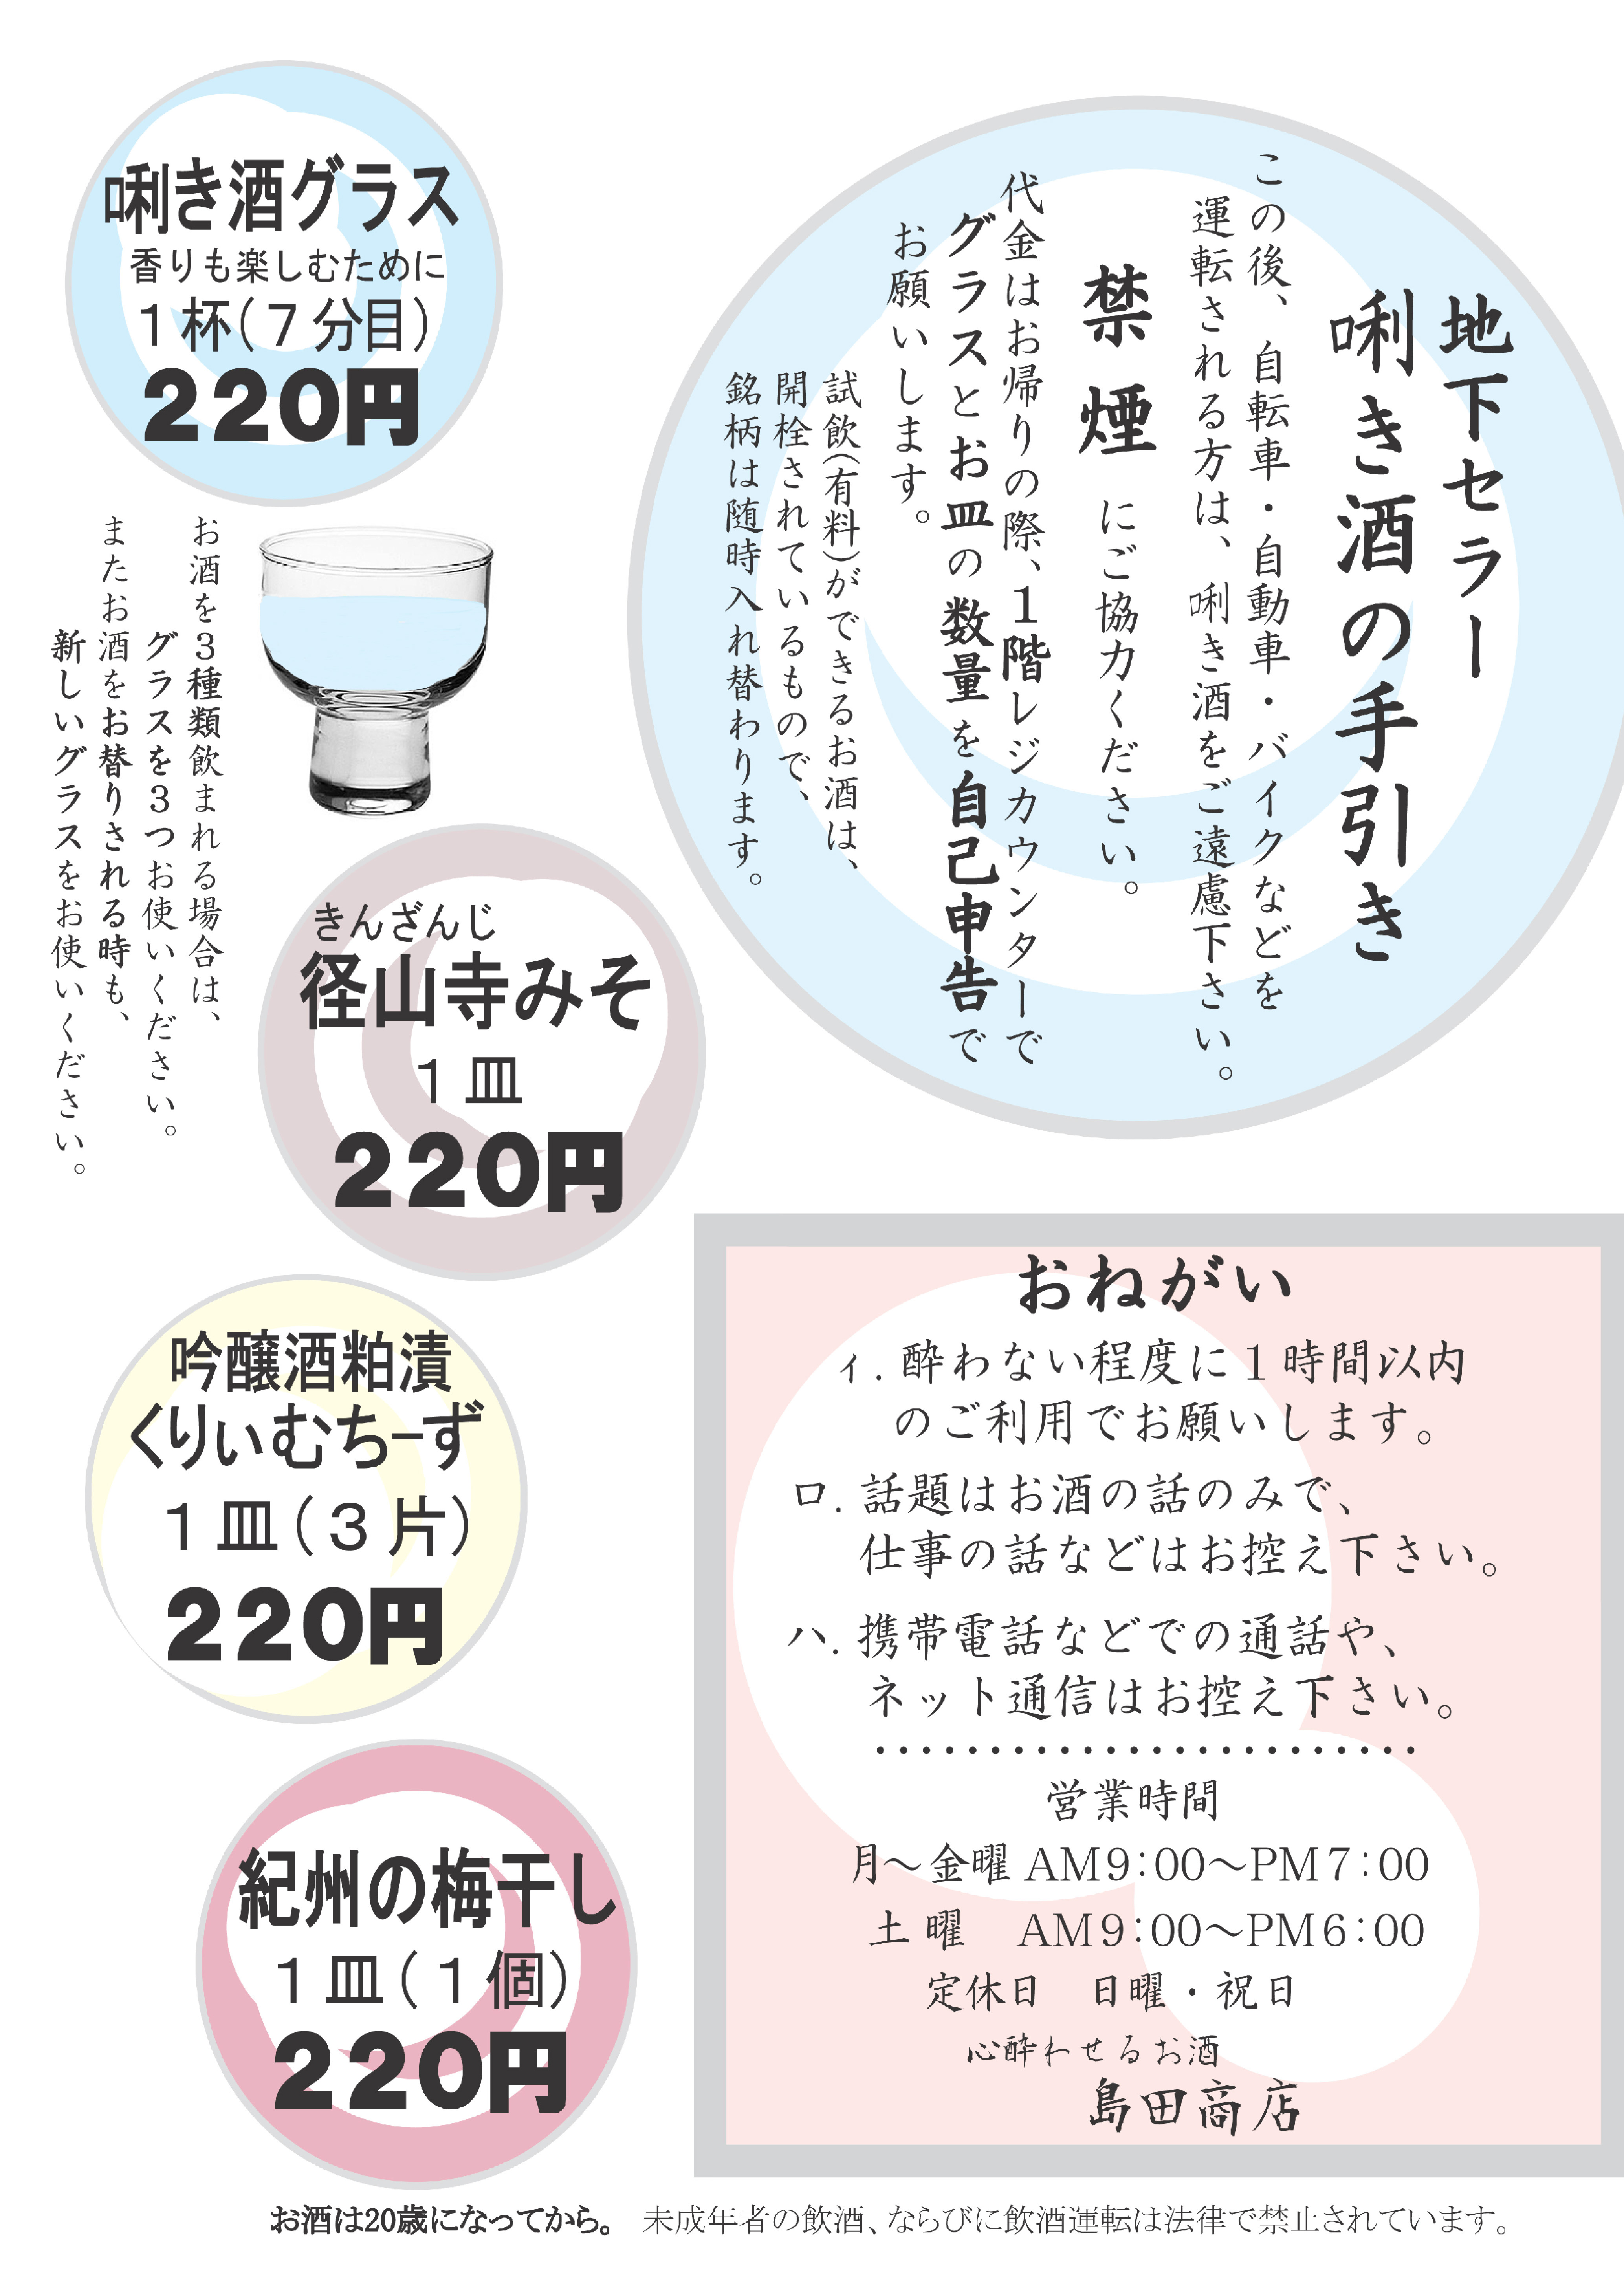 地下セラー手引き カラー2 2016.aiのコピー.jpg.jpg